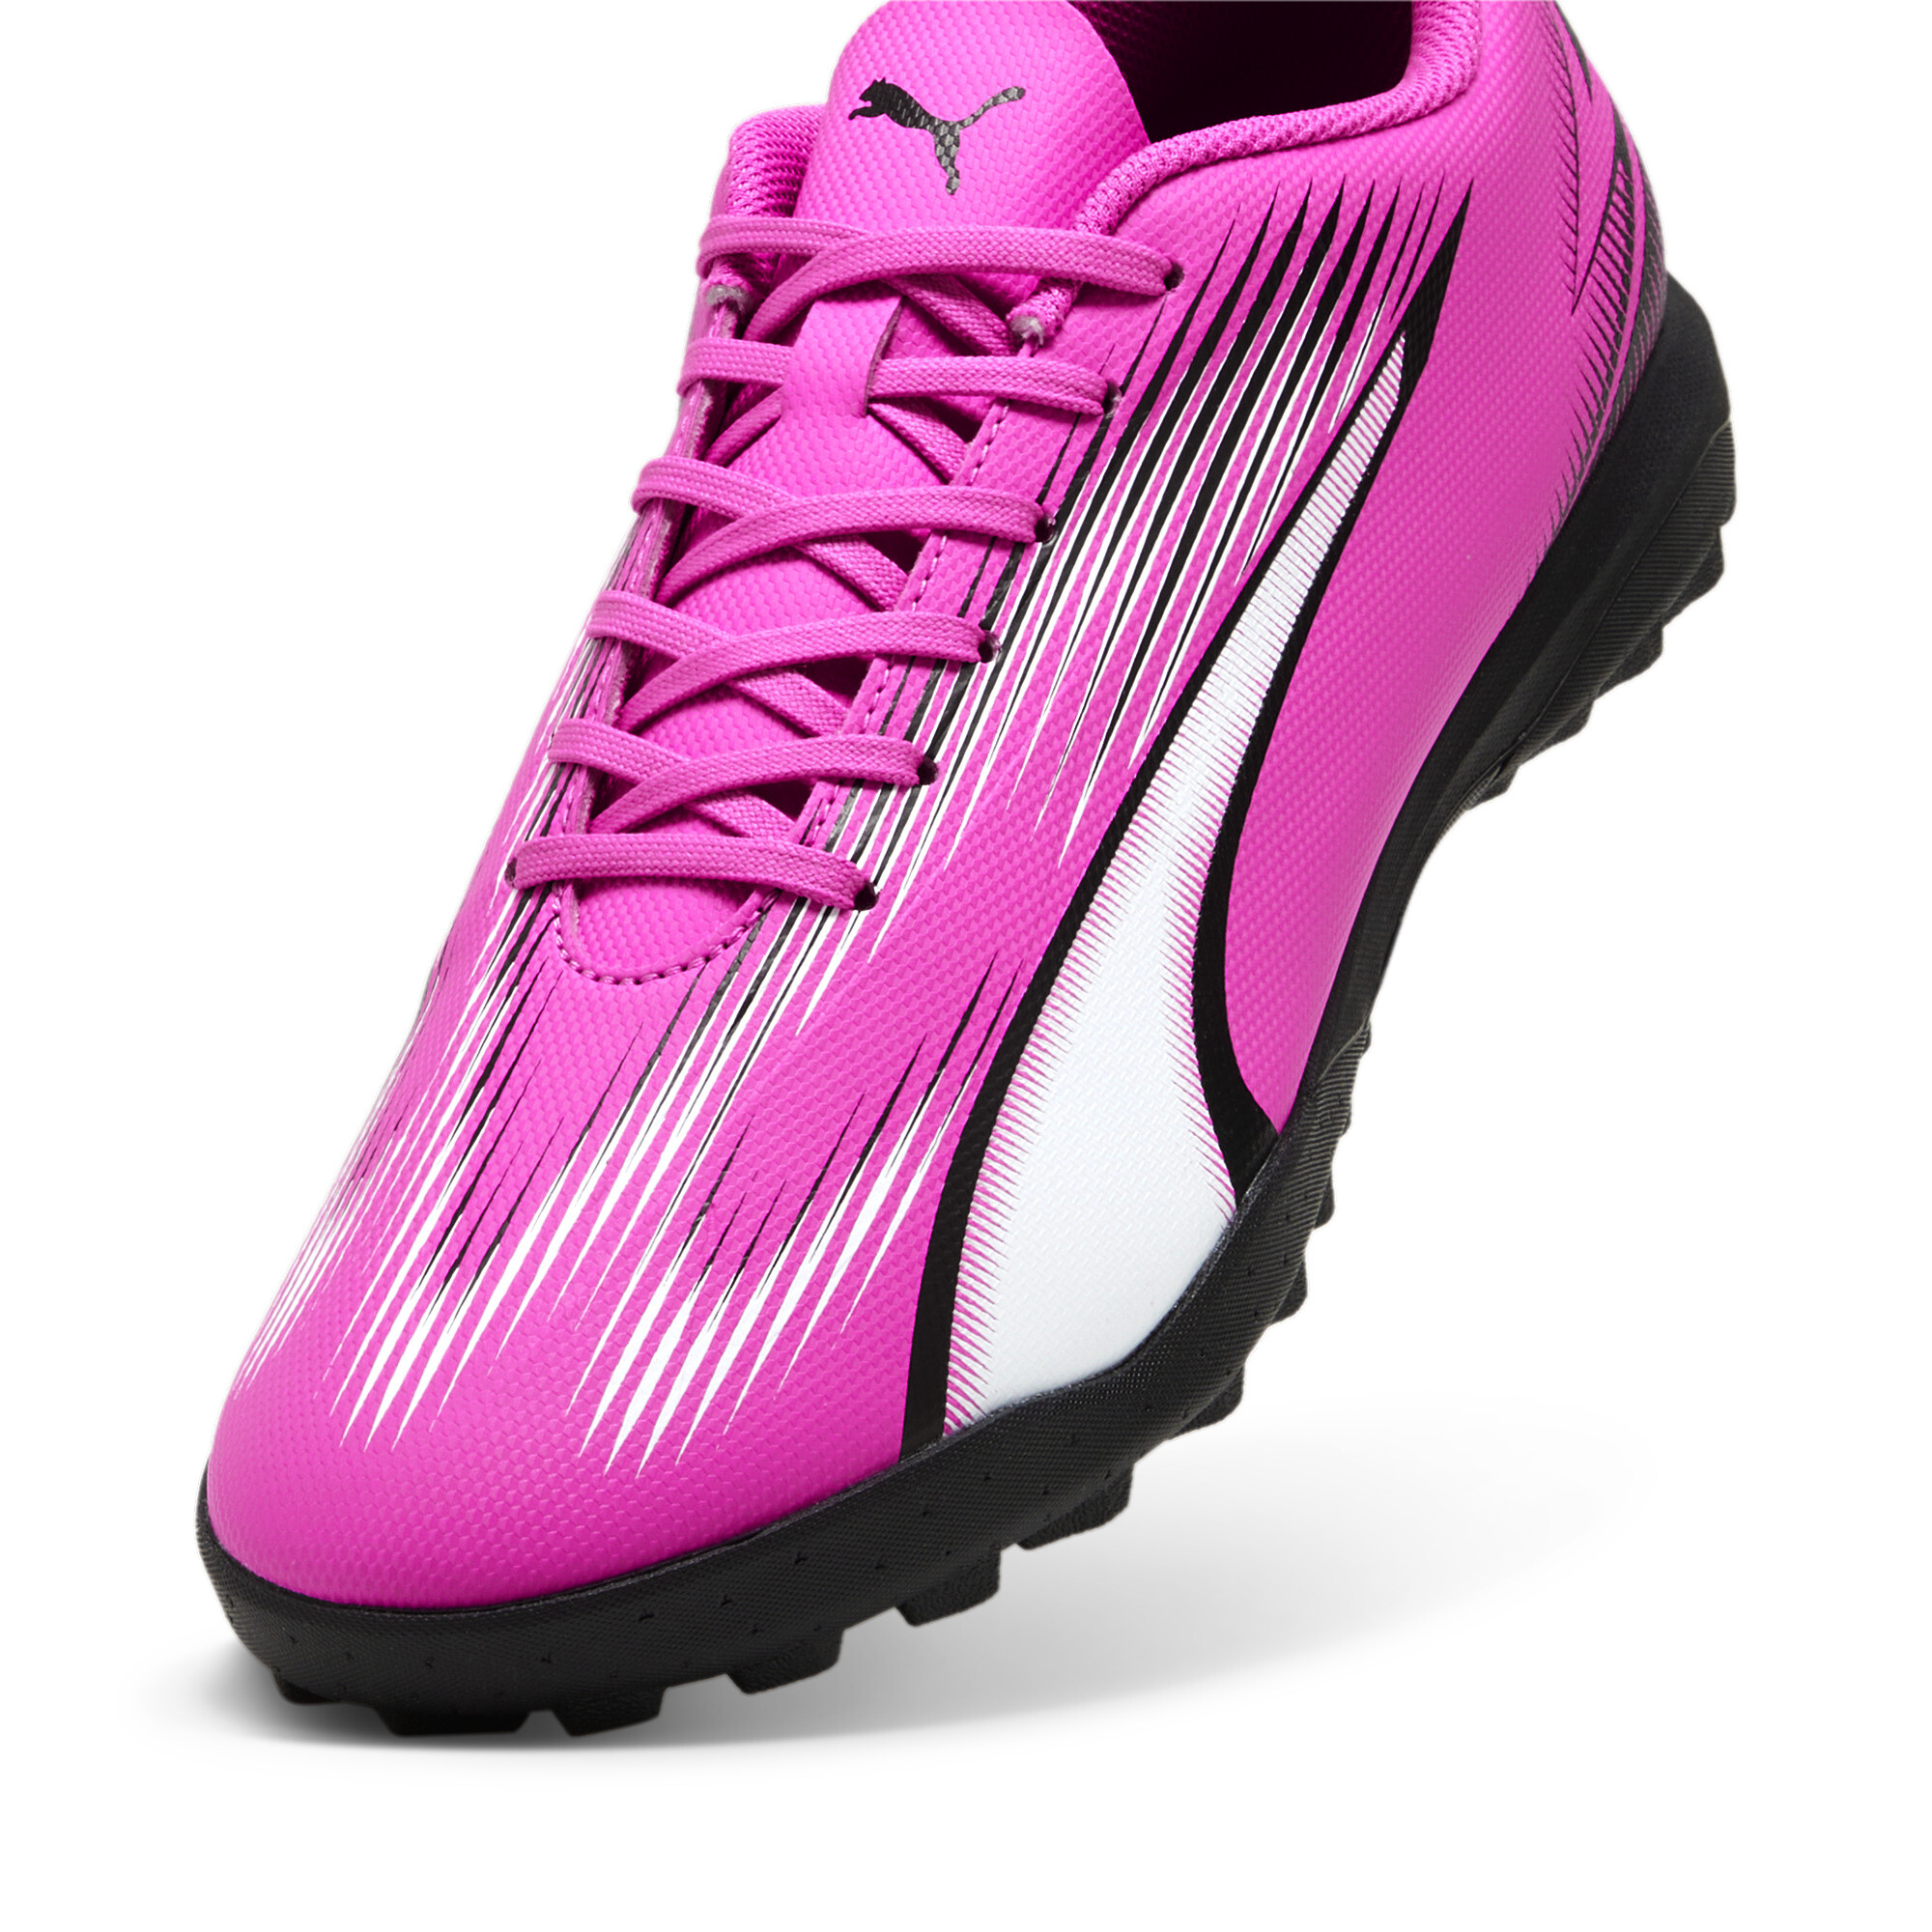 Men's PUMA ULTRA PLAY TT Football Boots In Pink, Size EU 41